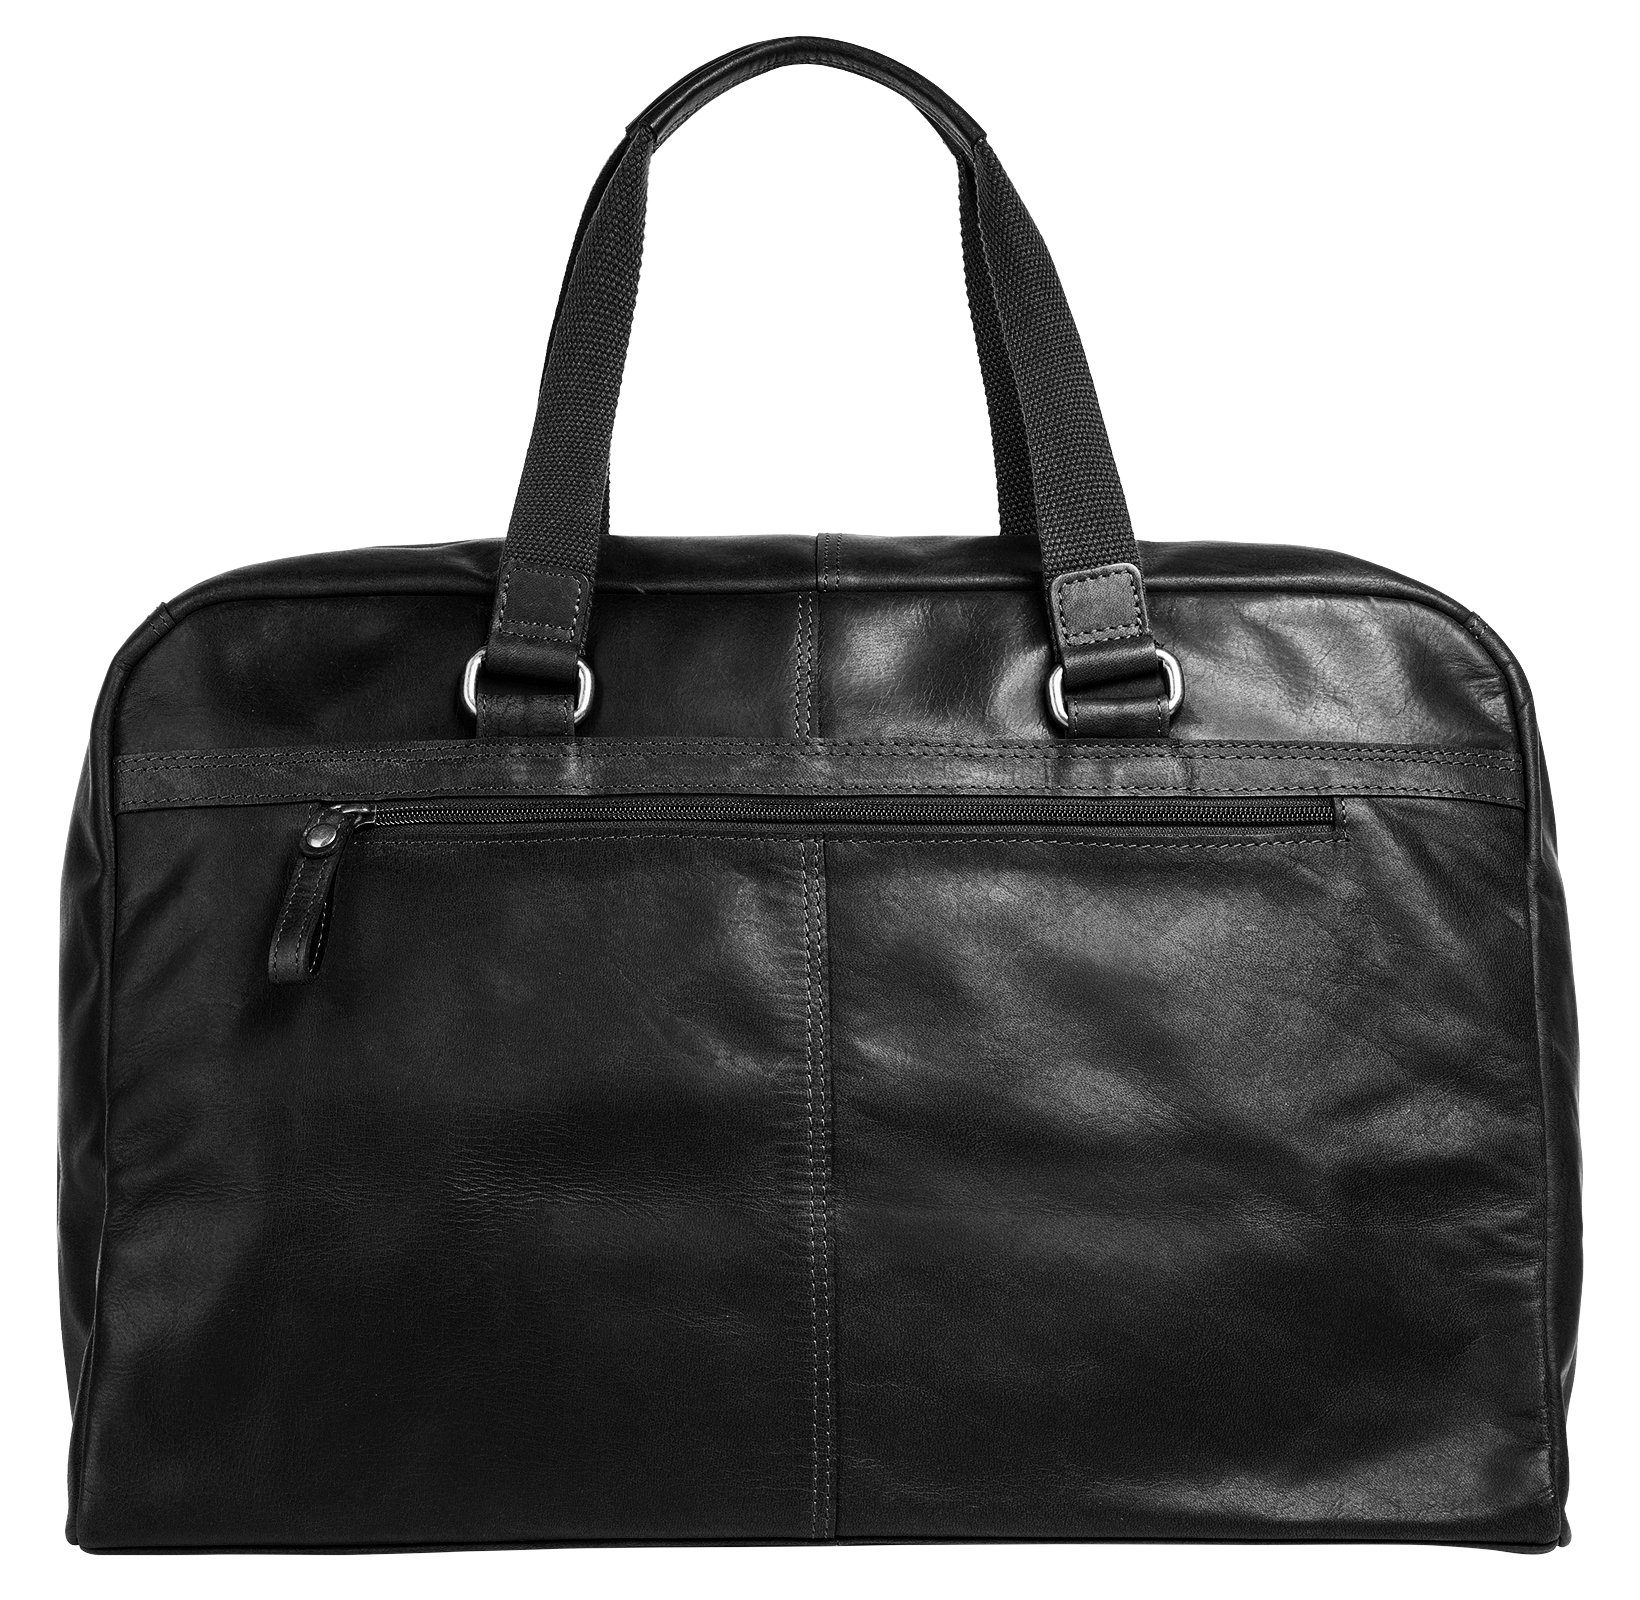 Sansibar Reisetasche, echt schwarz Leder